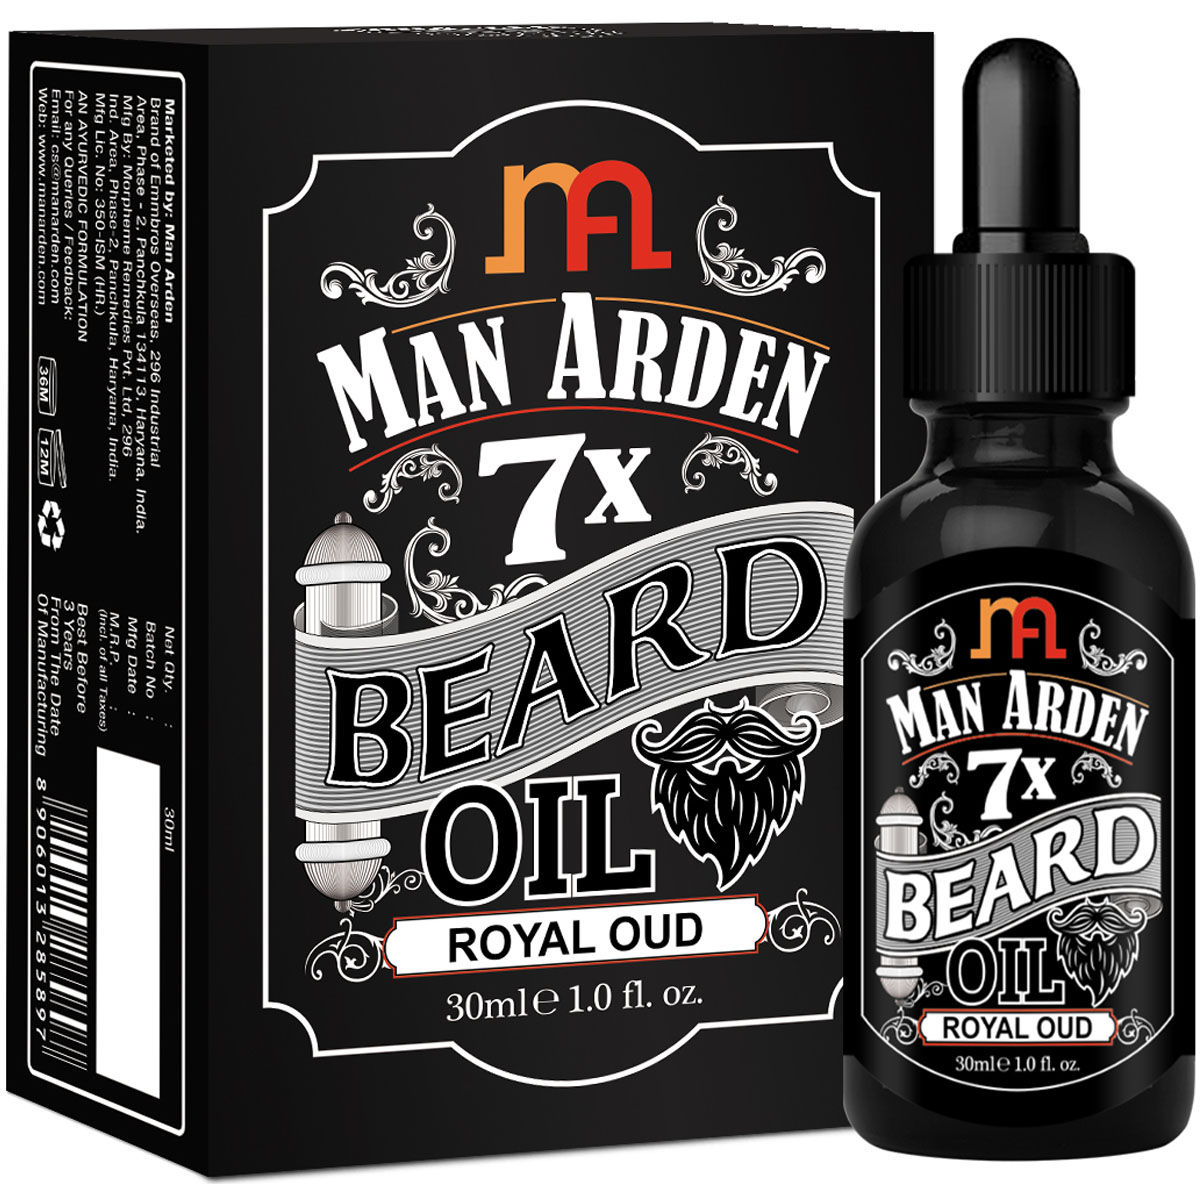 Man Arden 7X Royal Oud Beard Oil